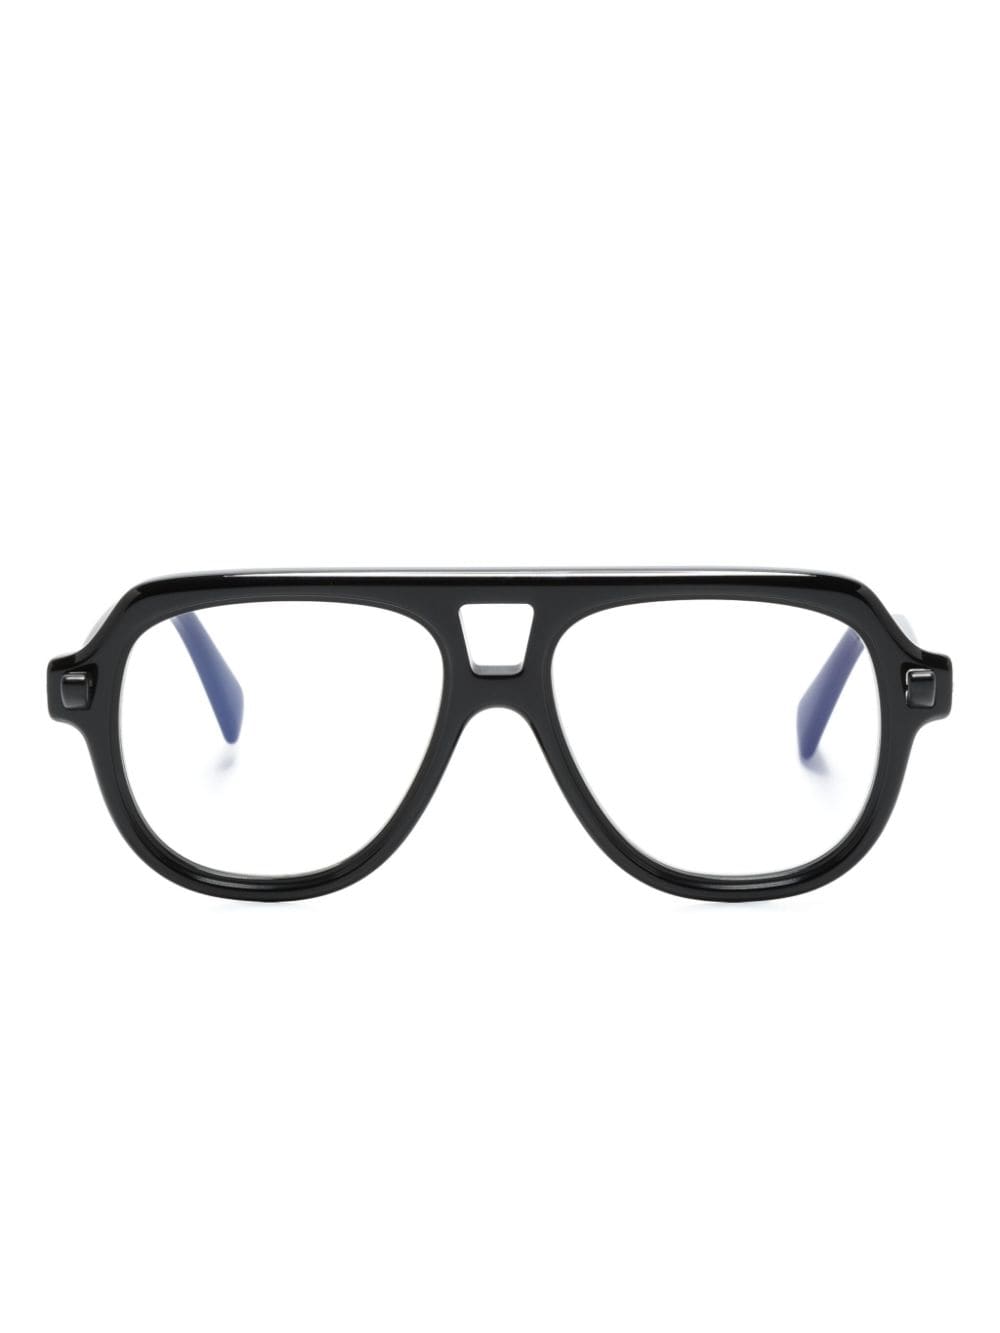 Kuboraum Q4 Pilotenbrille - Schwarz